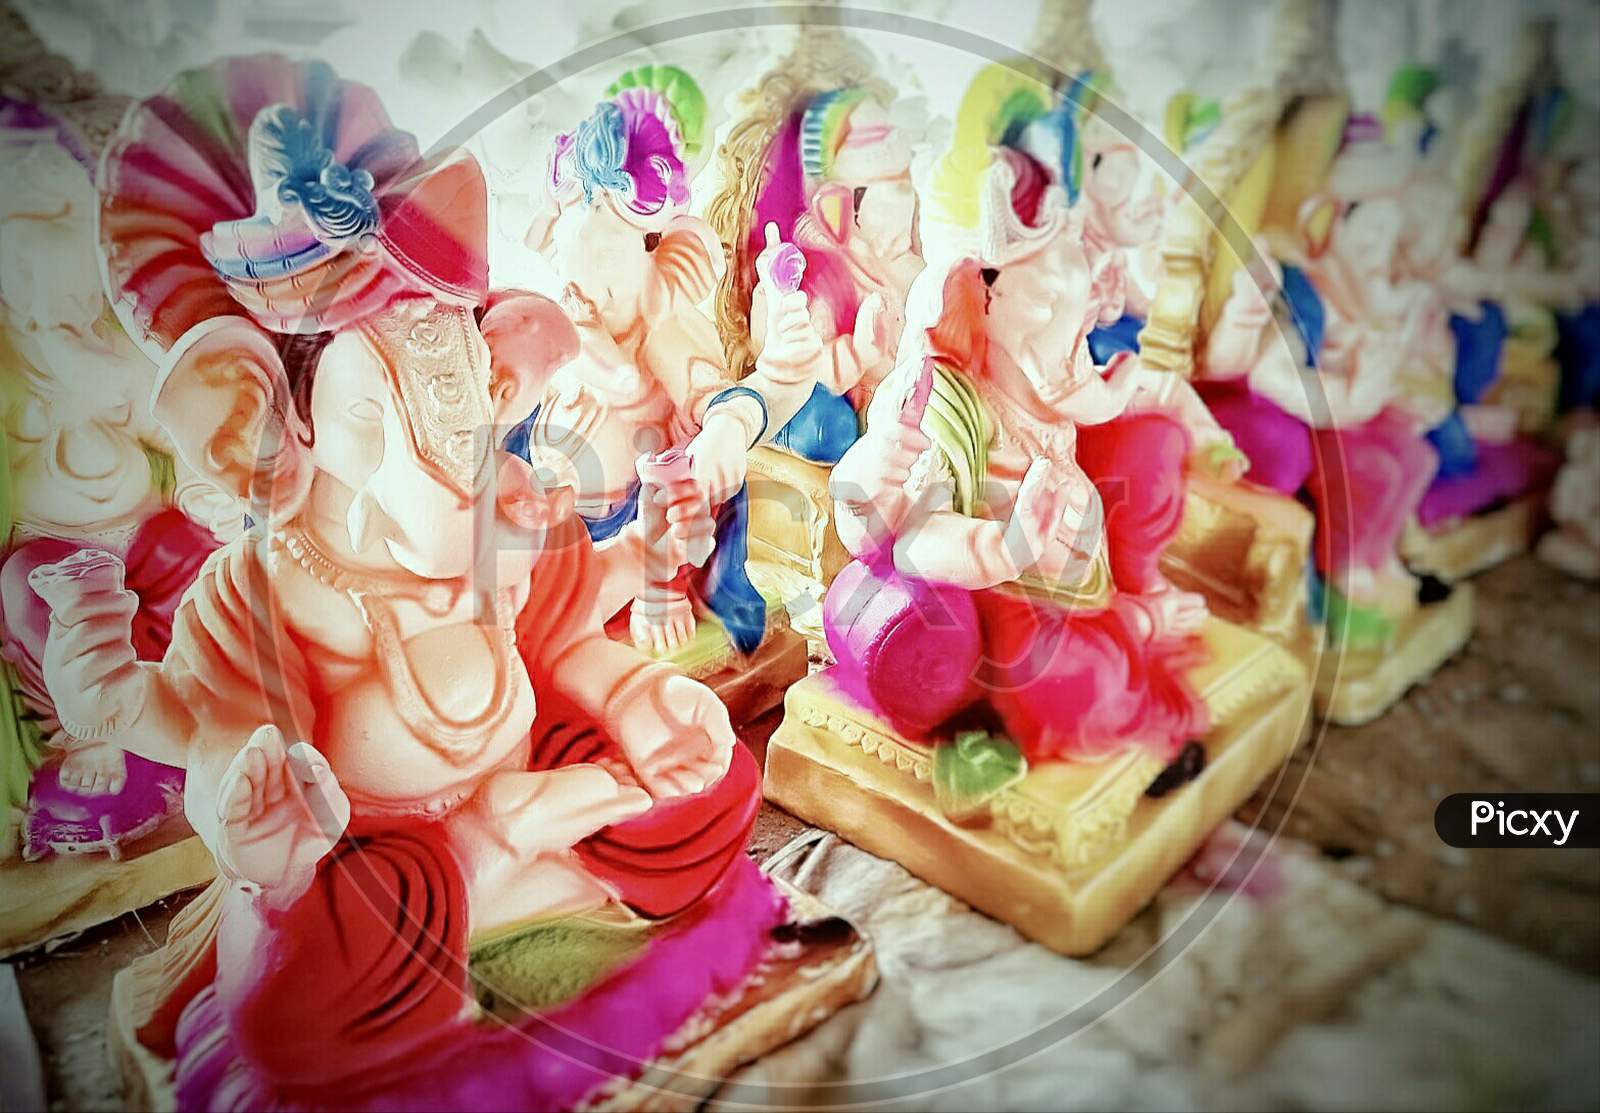 Idols of Lord Ganesha